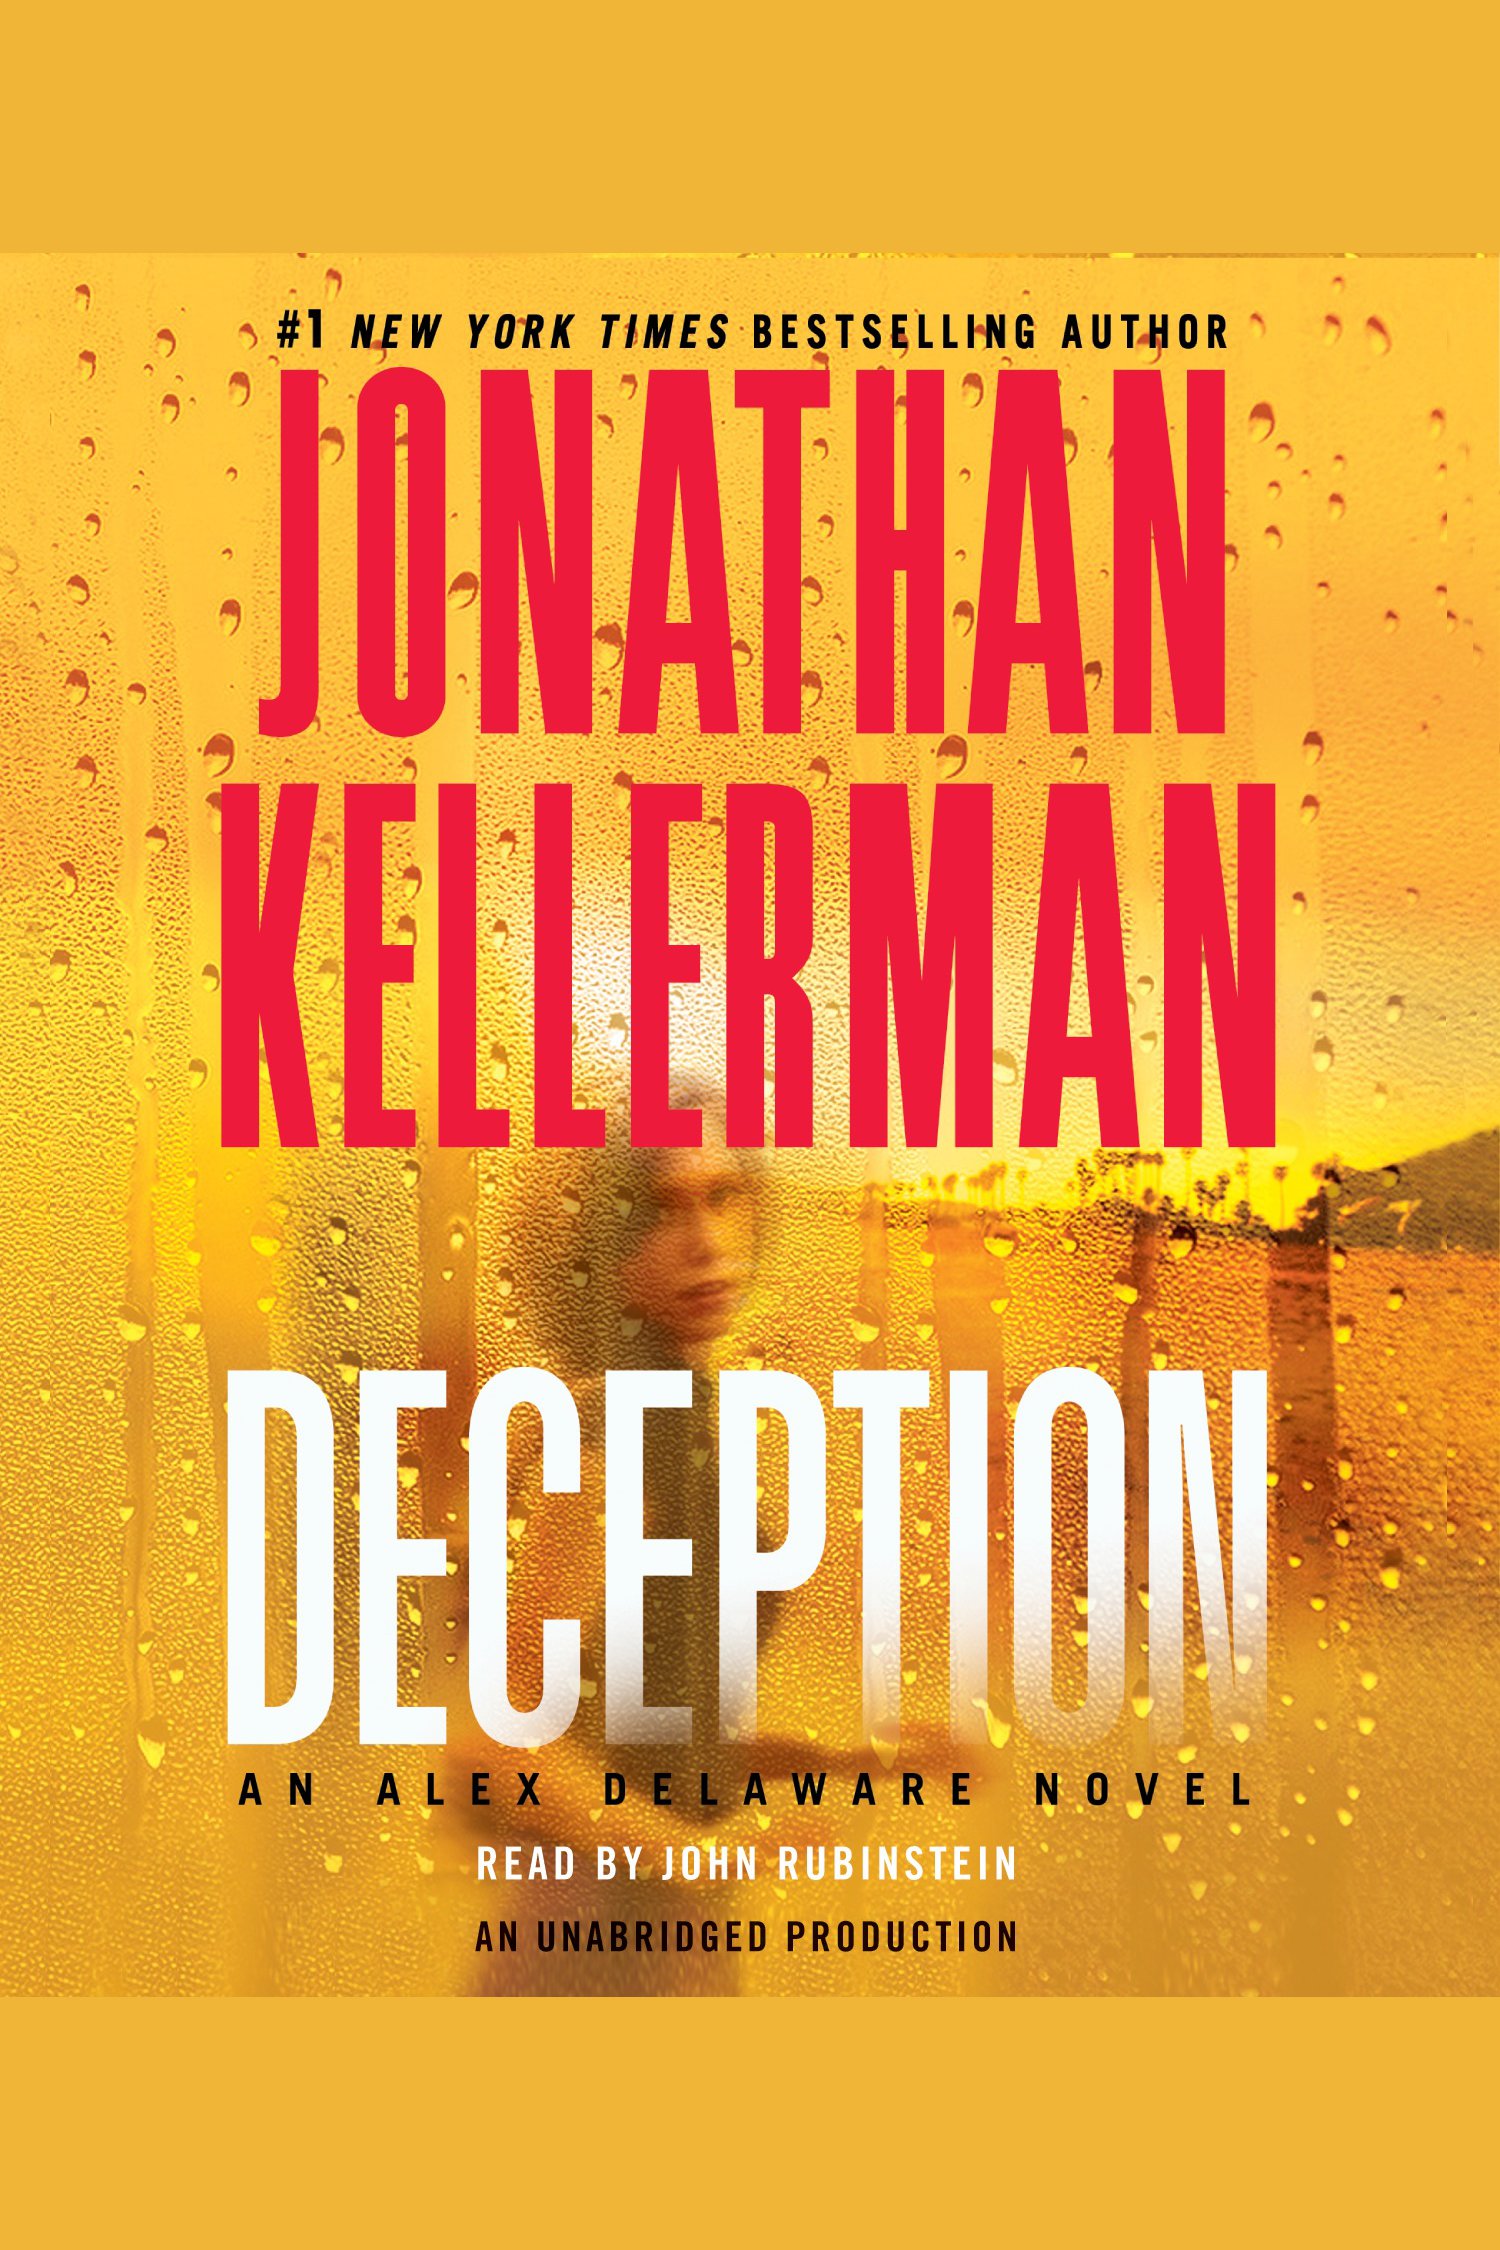 Image de couverture de Deception [electronic resource] : An Alex Delaware Novel